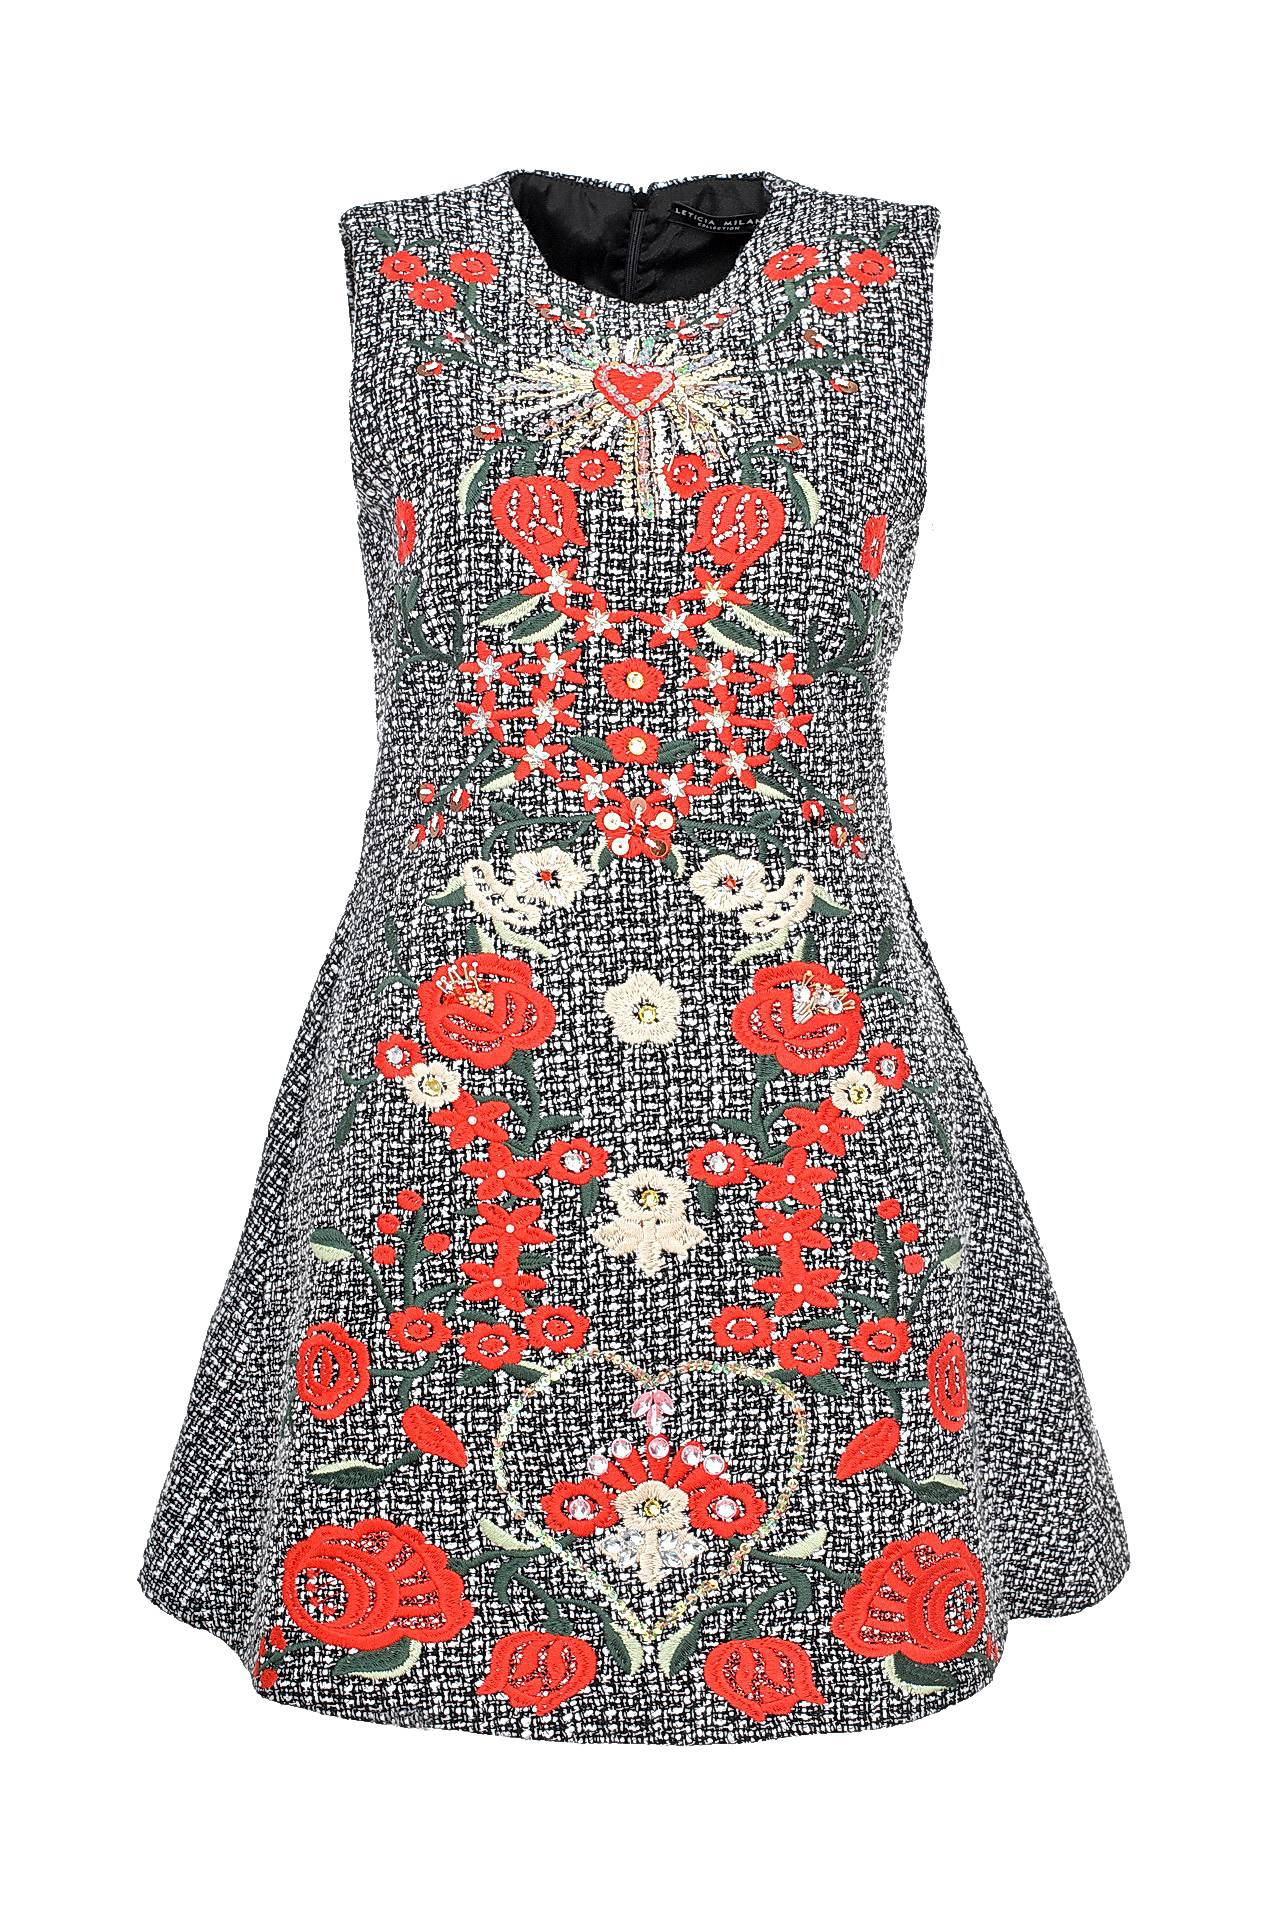 Одежда женская Платье LETICIA MILANO (J053103/15.1). Купить за 9750 руб.